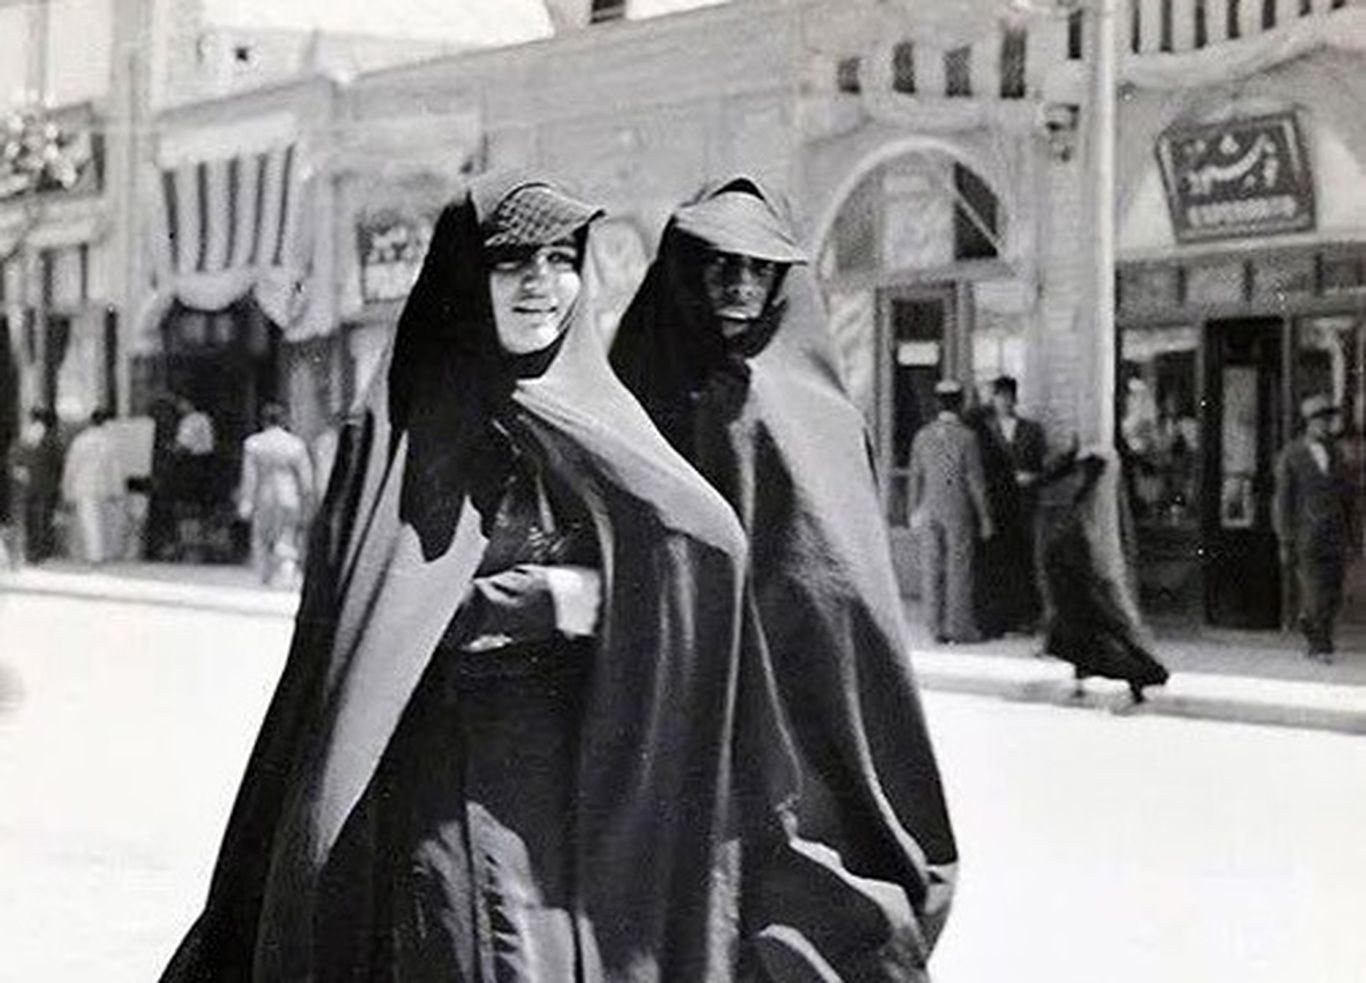 عکسی از دو زن تهرانی پیش از قانون کشف حجاب